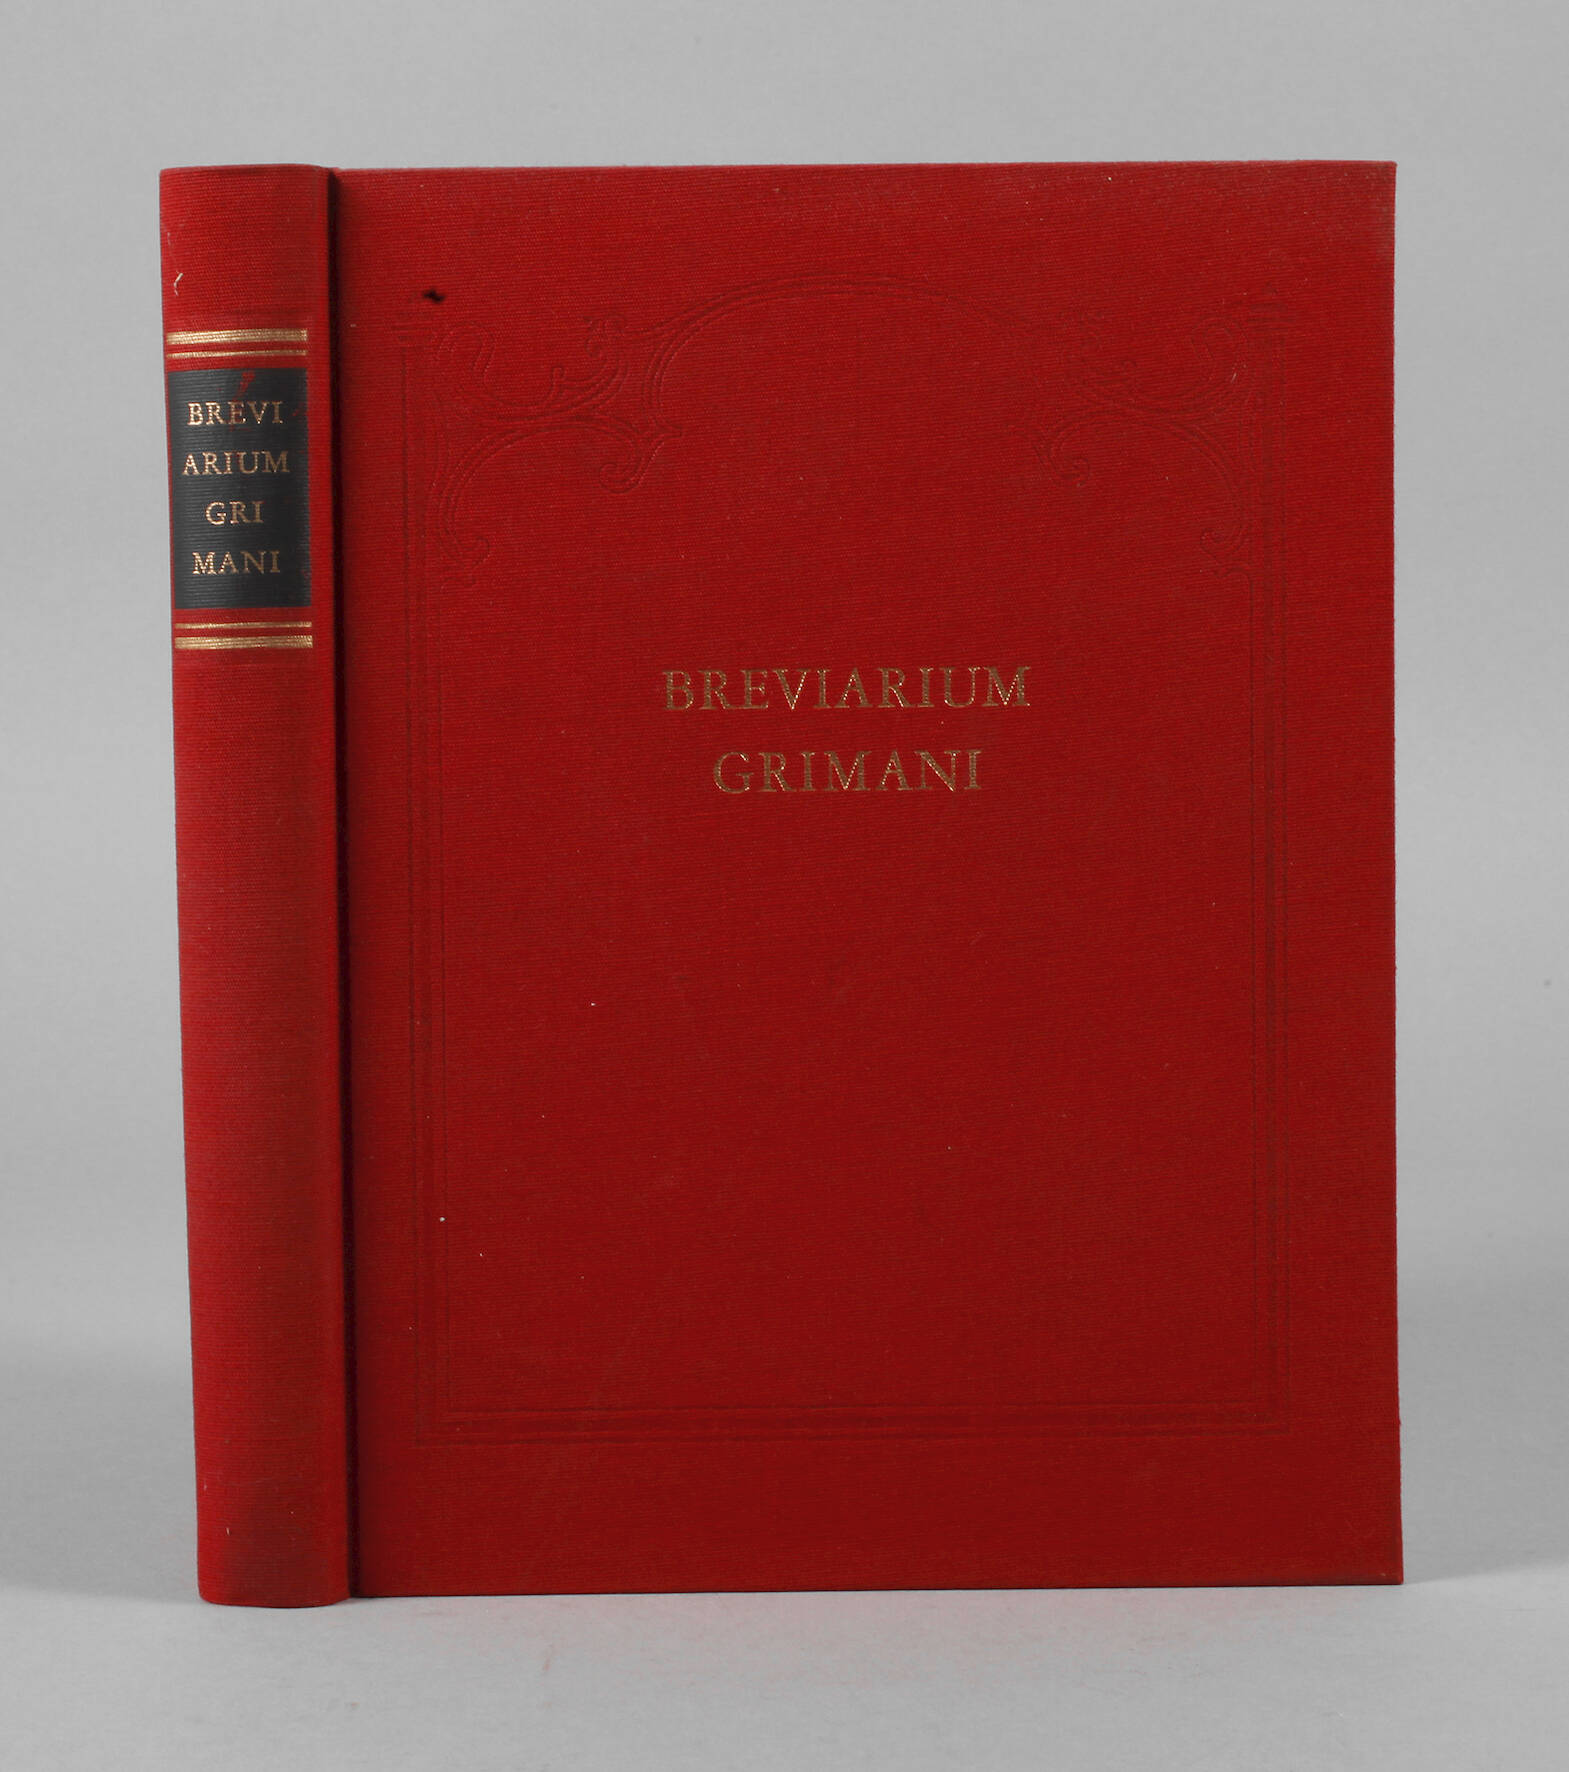 Breviarium Grimani